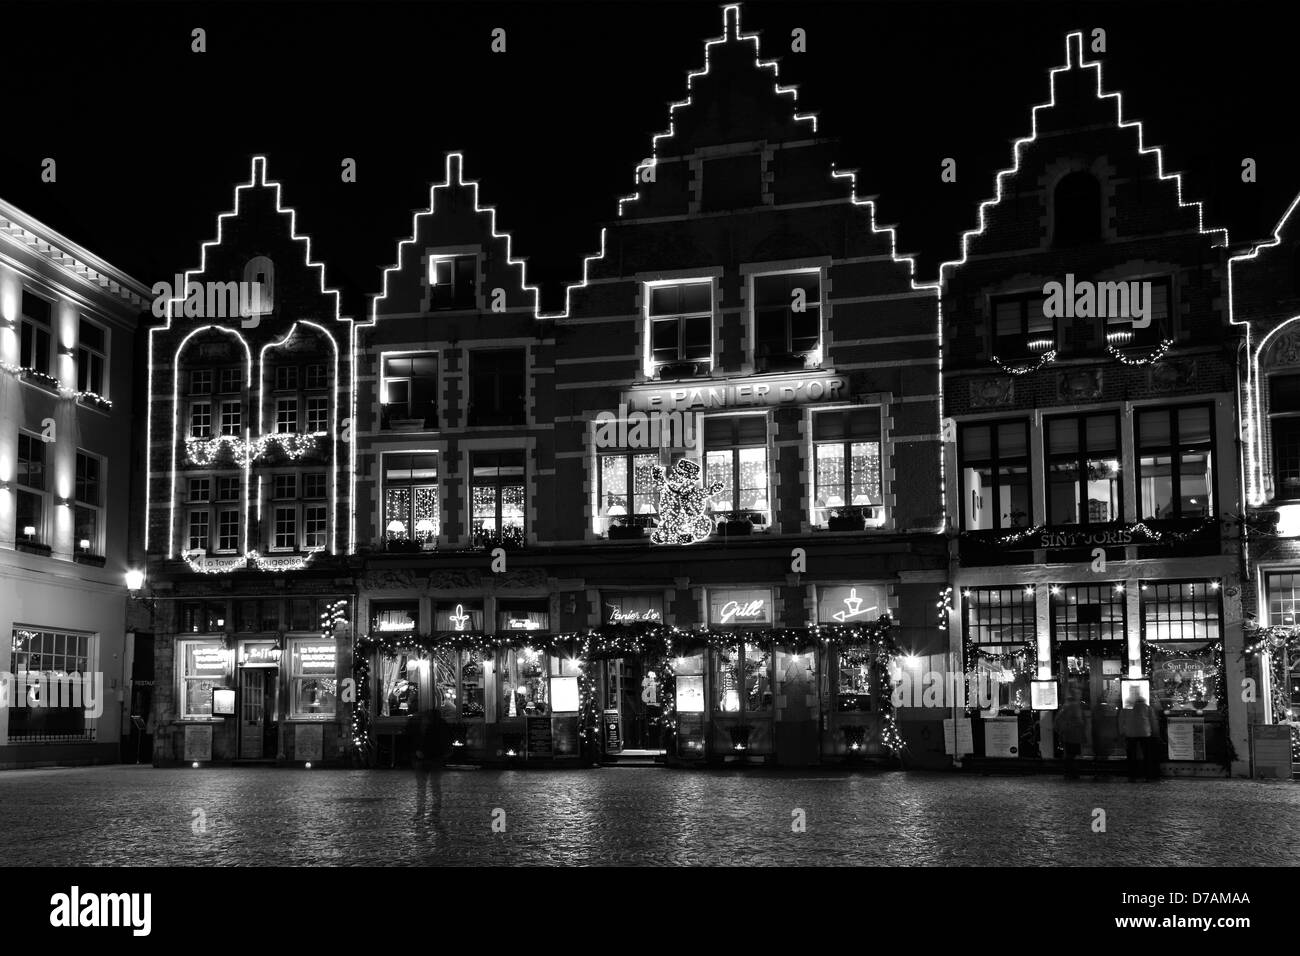 Decorazioni di Natale per gli edifici che circondano la piazza del mercato di Bruges città, Fiandre occidentali nella regione fiamminga del Belgio Foto Stock